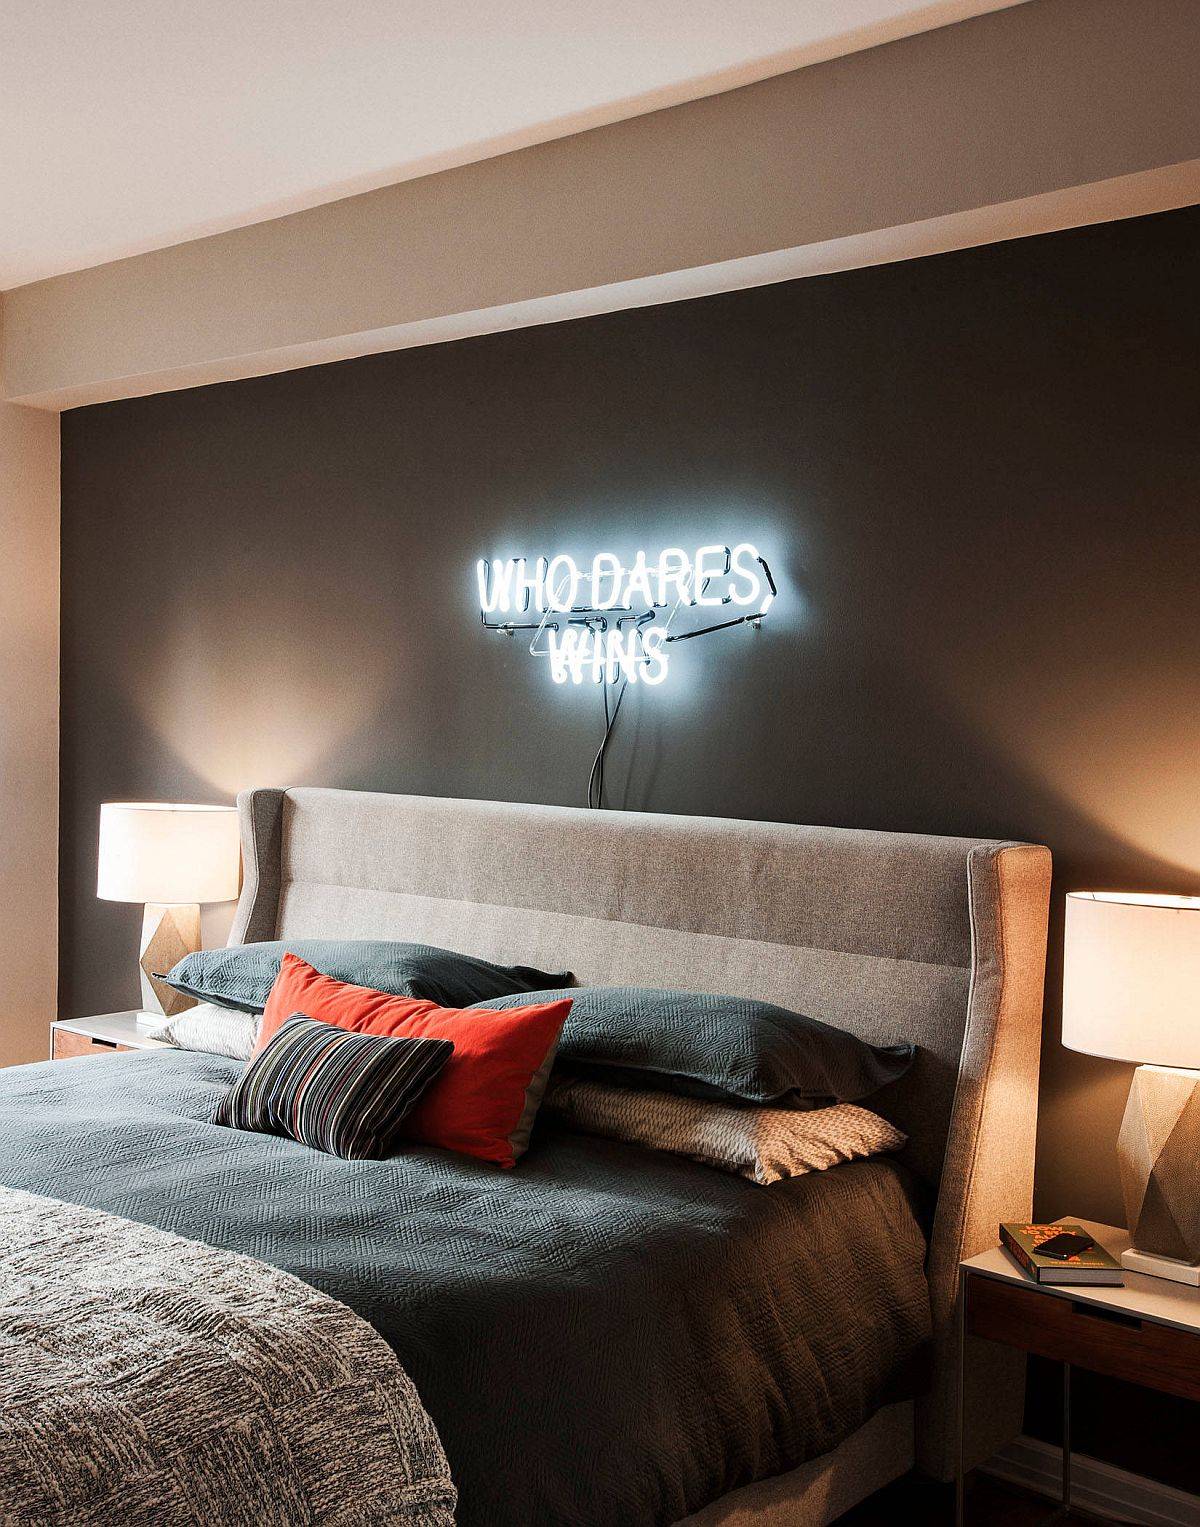 Ánh sáng đèn LED đầu giường càng tăng thêm vẻ đẹp sang trọng của phòng ngủ này.